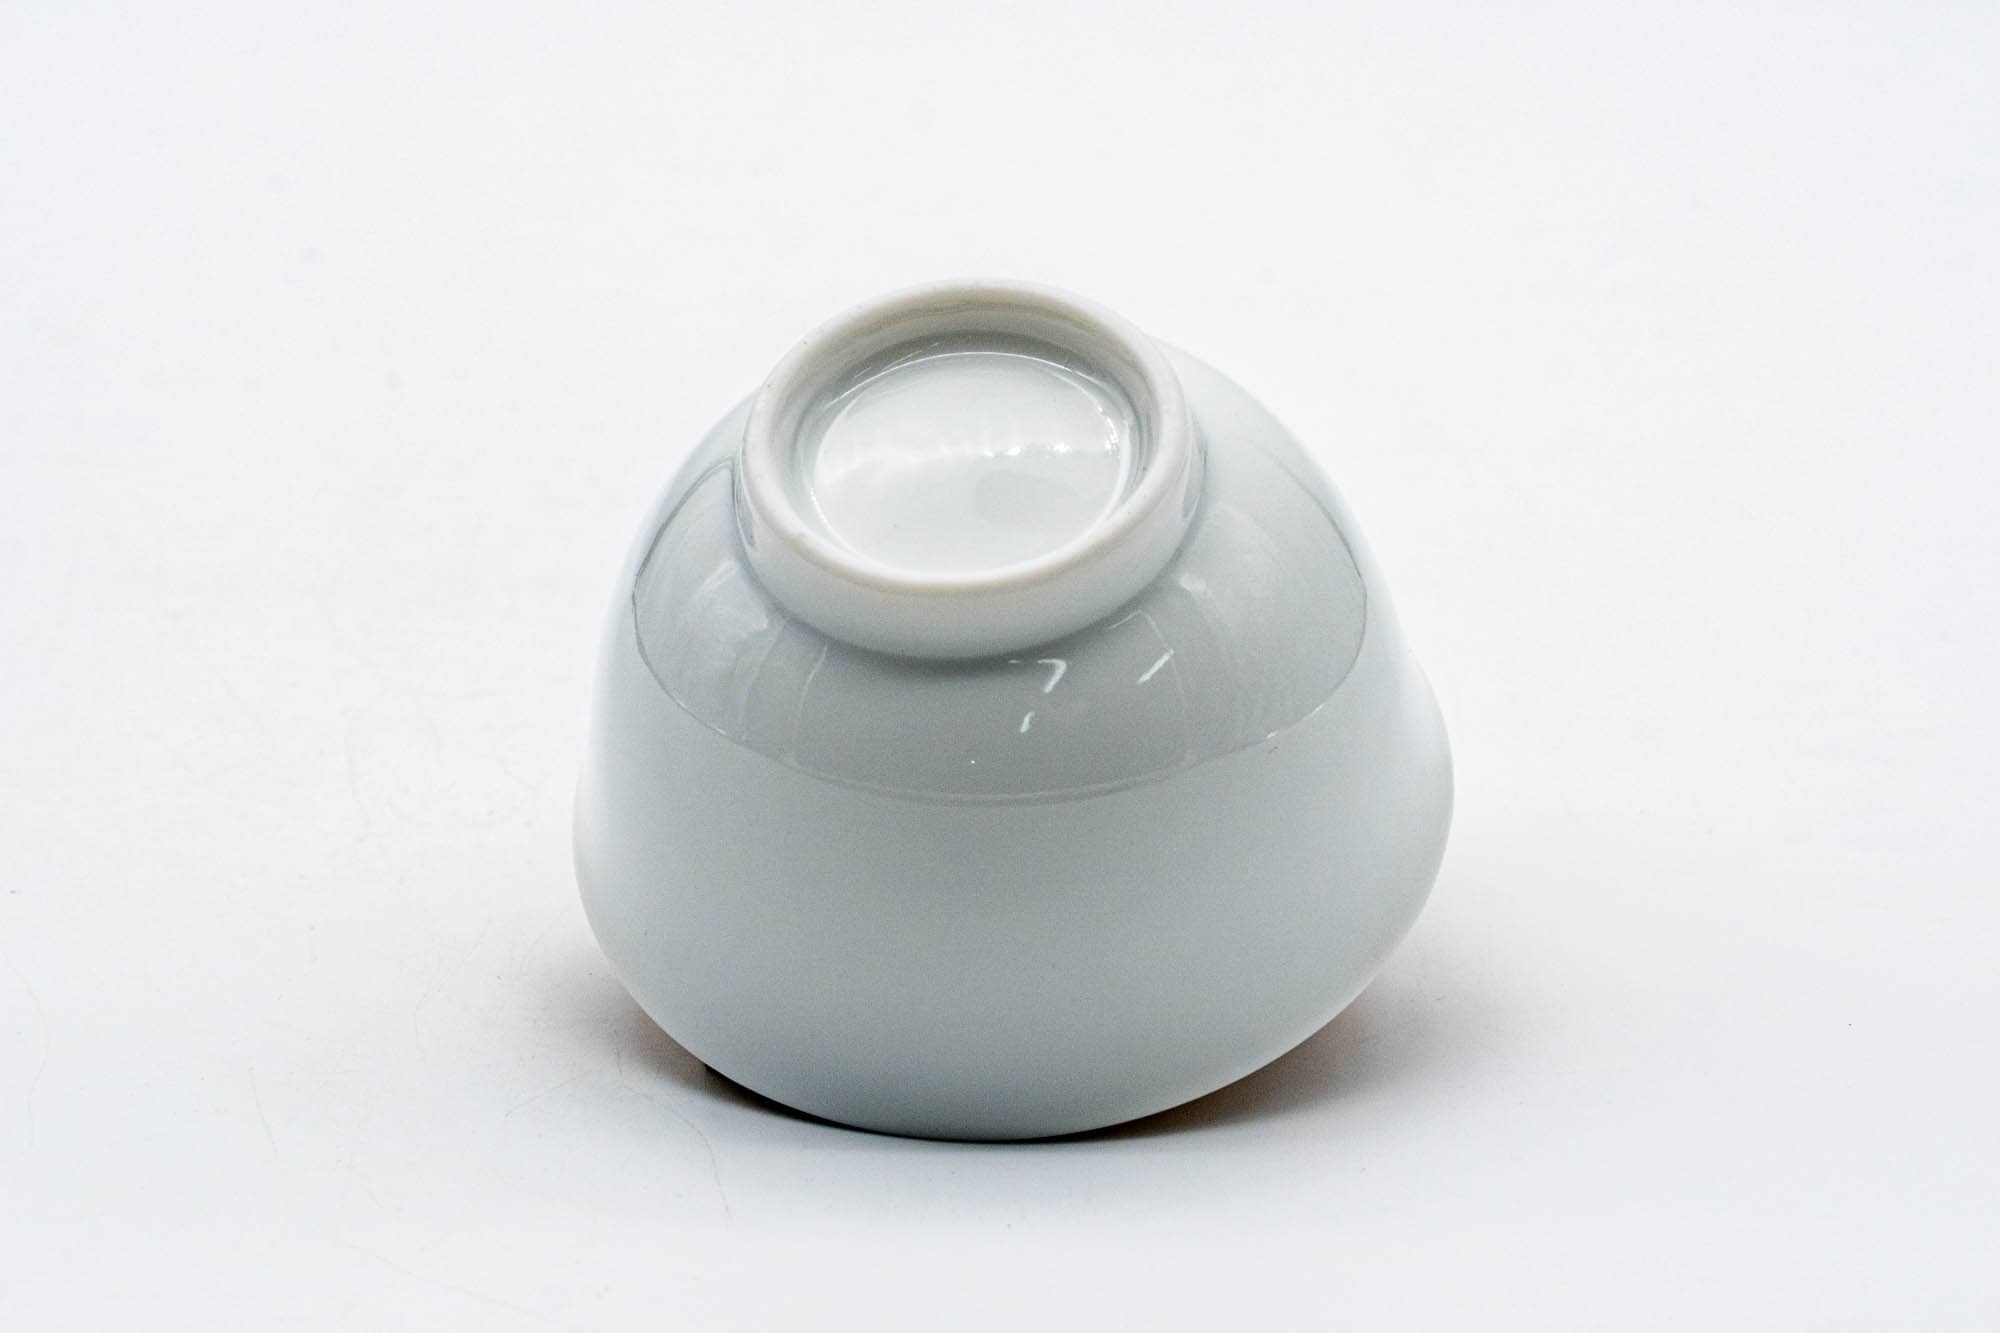 Japanese Tea Set - 陶仙窯 Tosen Kiln - Yellow Nerikomi Tokoname-yaki Teapot with 5 Porcelain Teacups